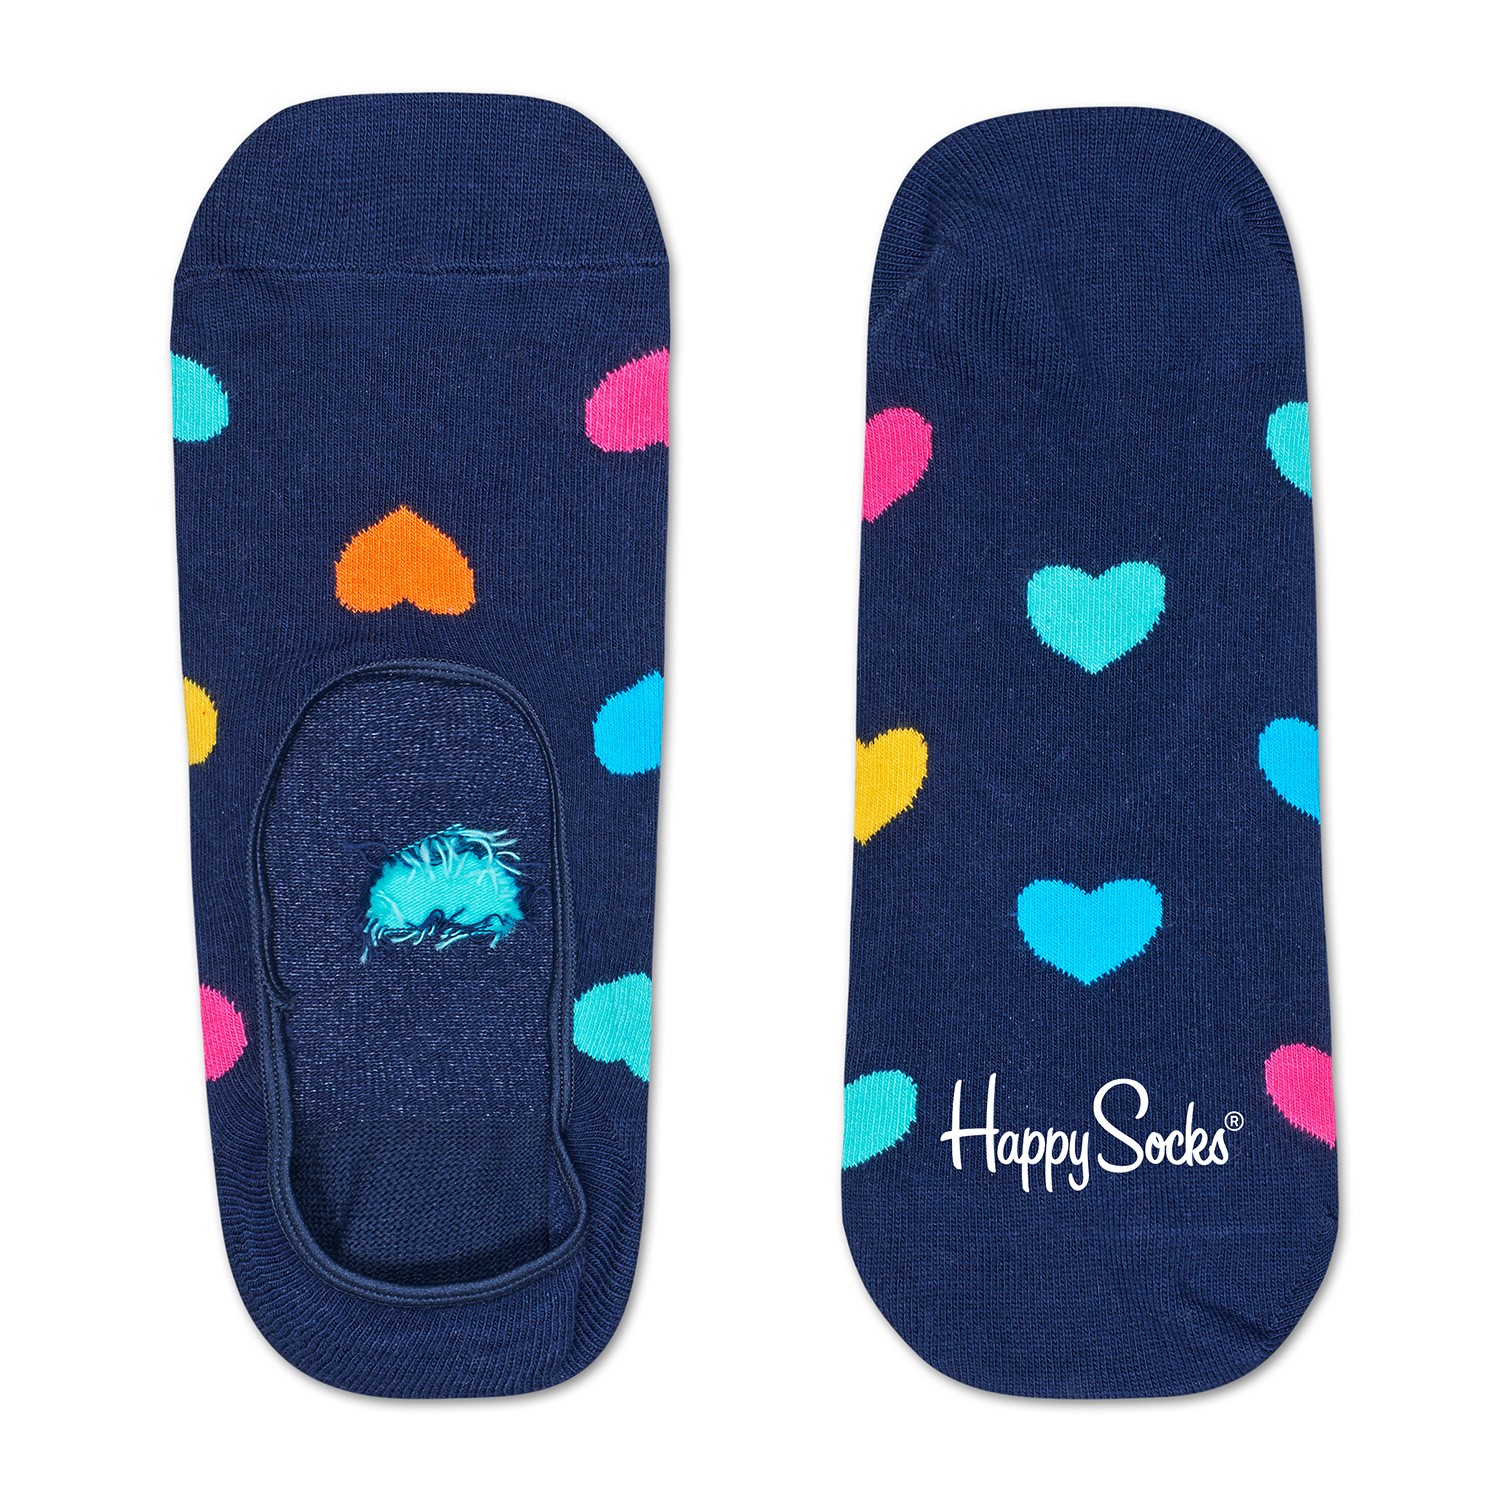 Happy Socks Heart Liner Sock - Ankle 